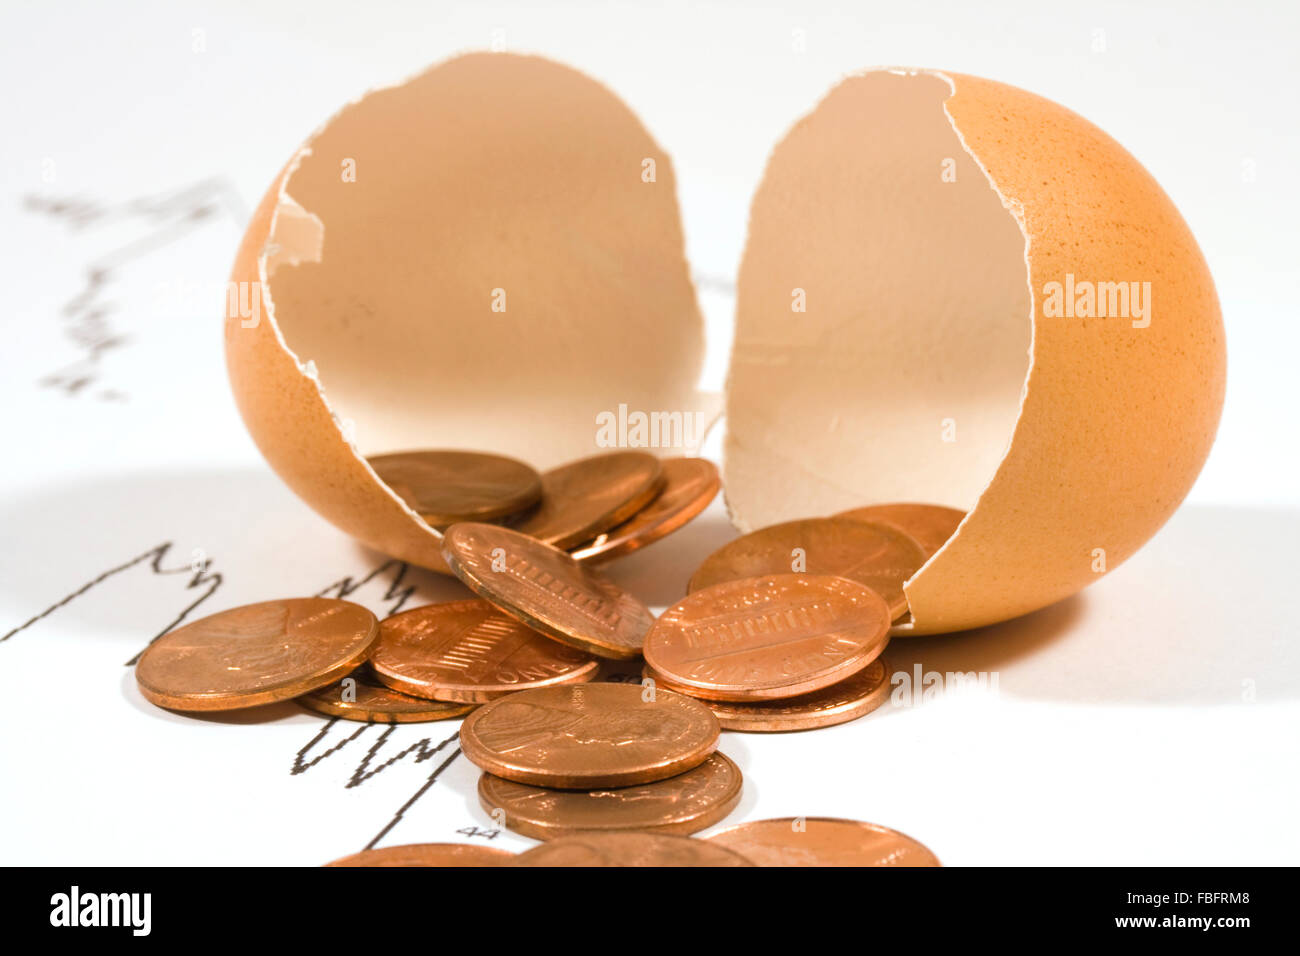 Huevos rotos con centavos cayendo desde el interior para mostrar el concepto de 'mi fondo de jubilación se ha ido!" Foto de stock